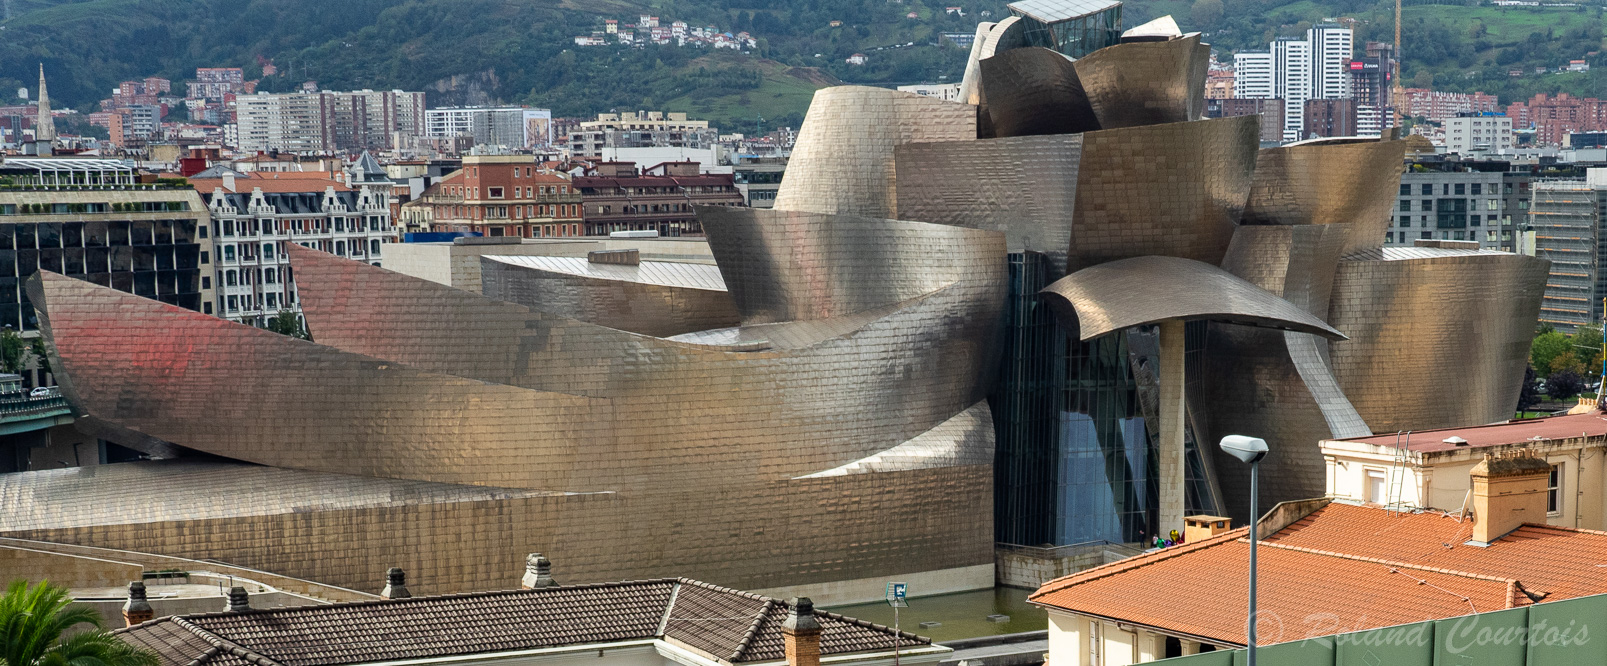 Musée Guggenheim à Bilbao: La structure innovante du bâtiment a été dessinée par Frank Gehry.